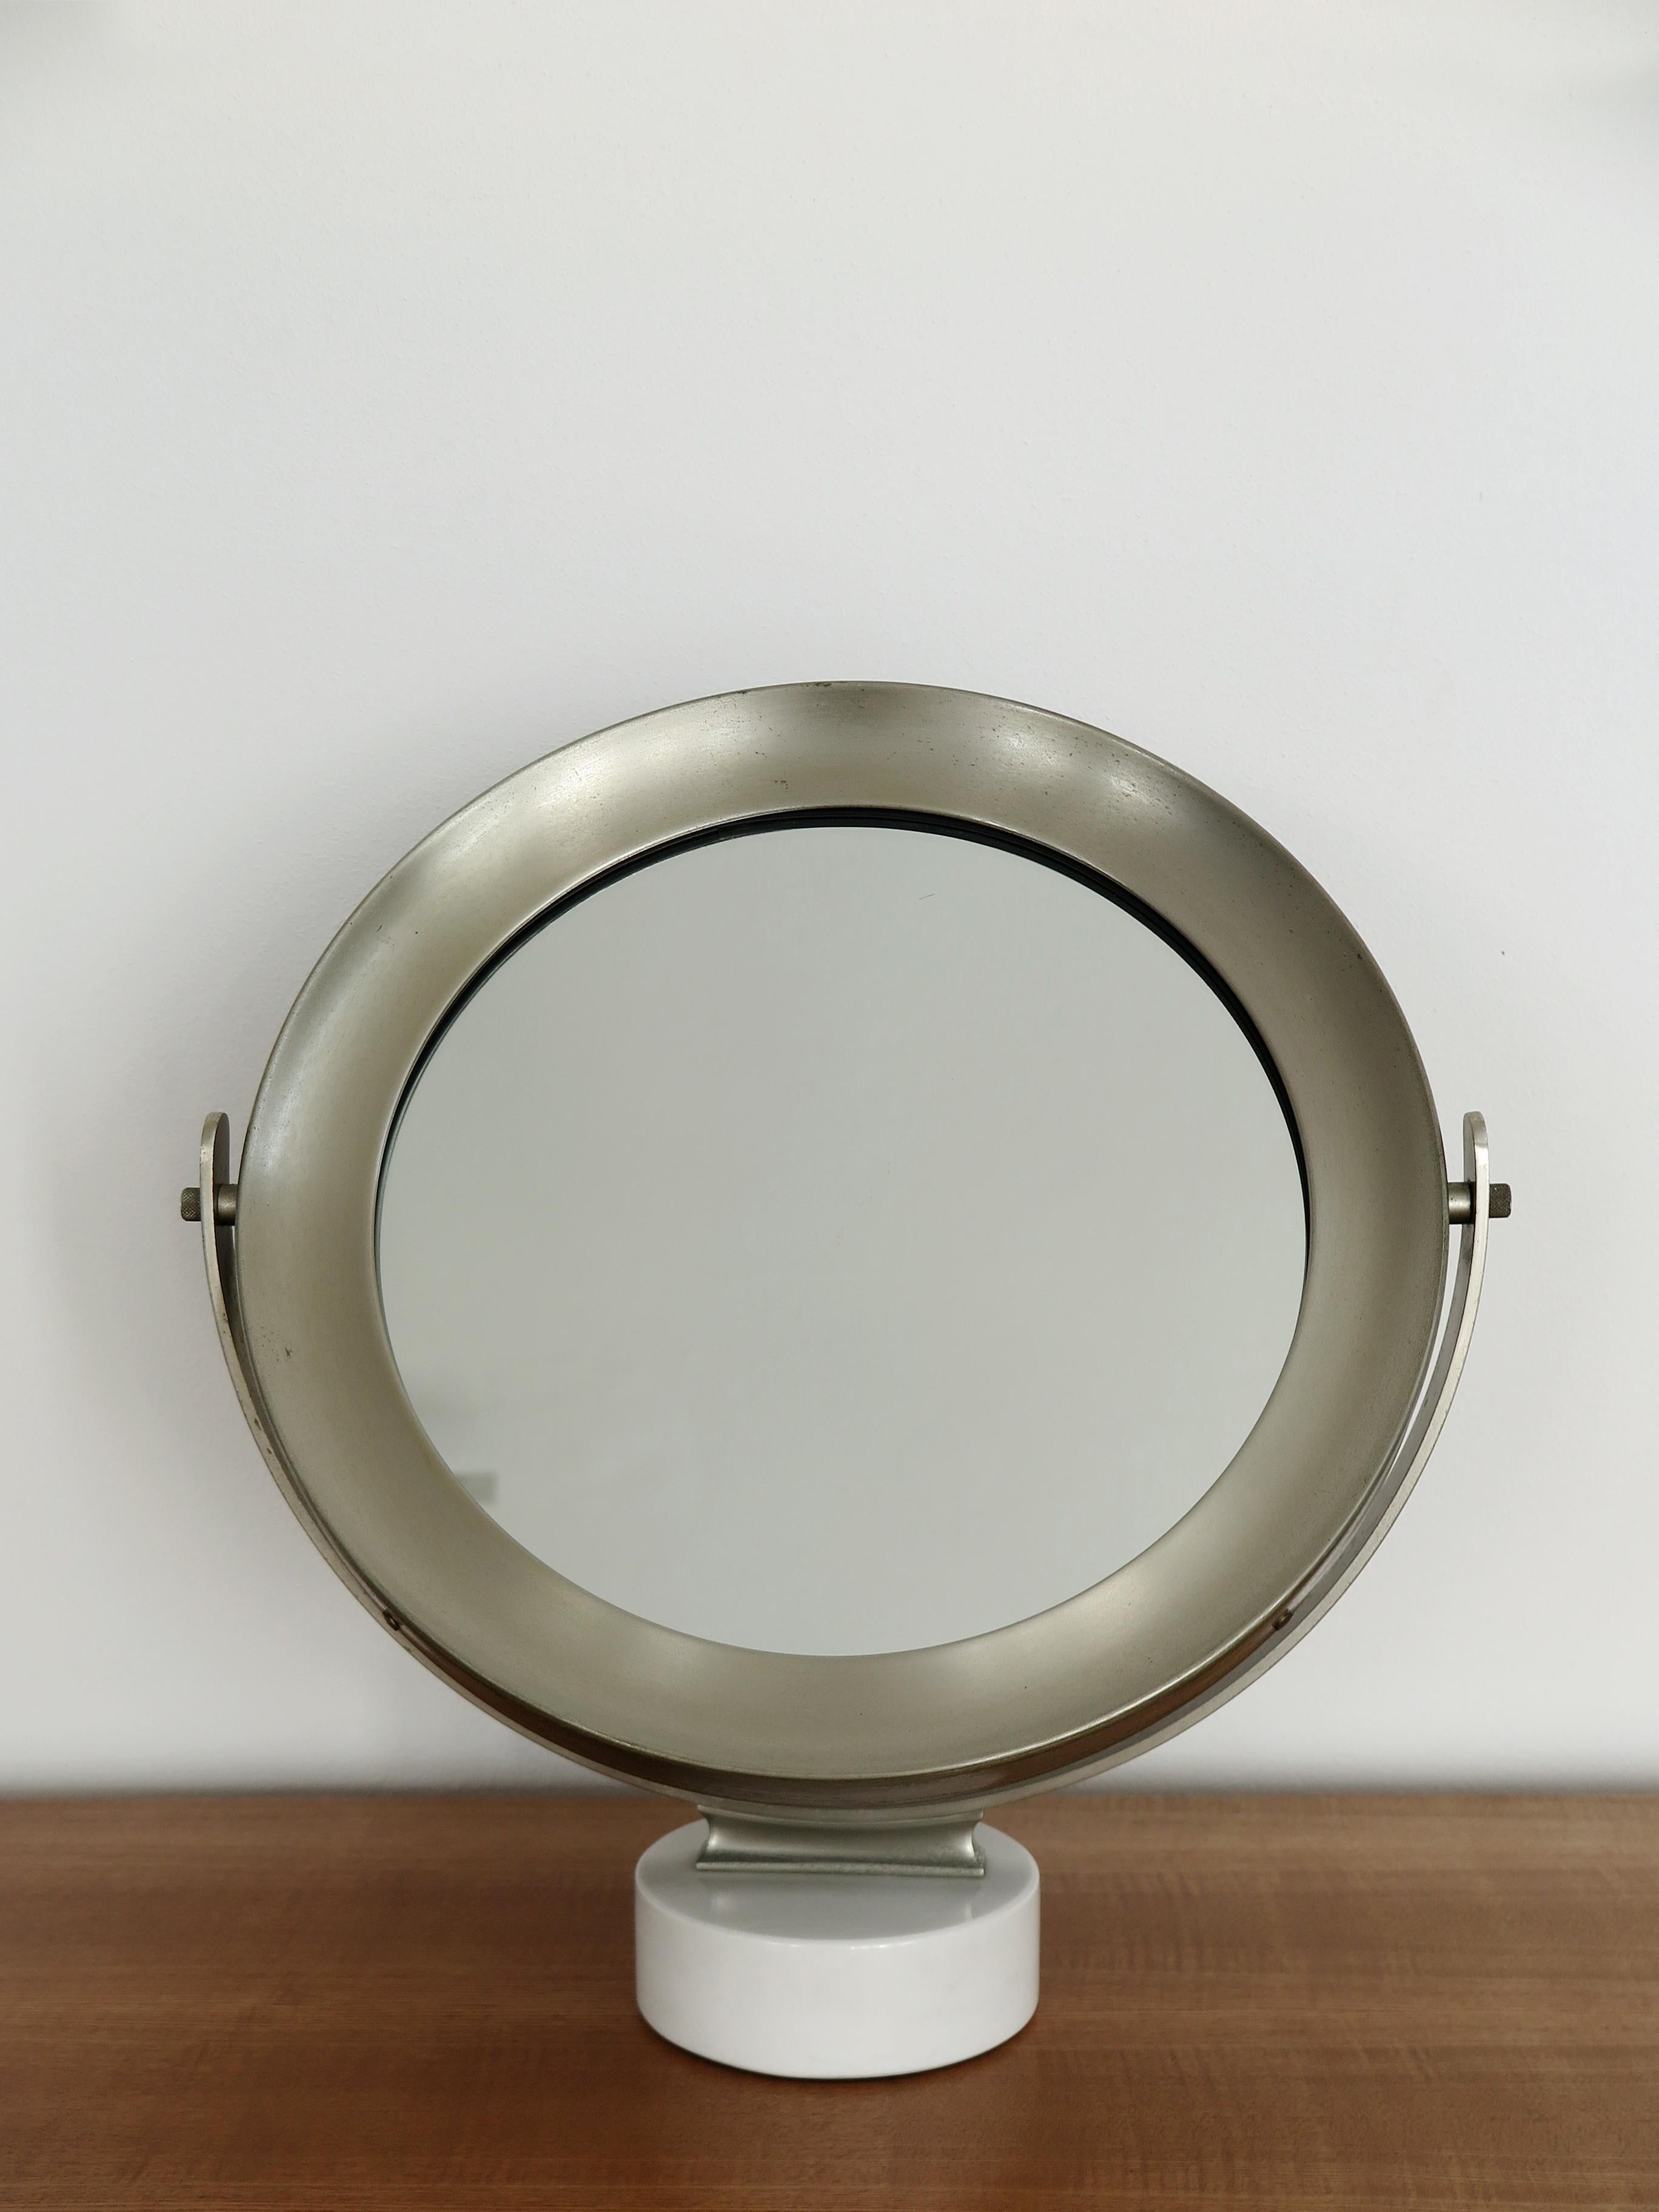 Miroir de table pivotant au design italien du milieu du siècle dernier, modèle Narciso, conçu par Sergio Mazza pour Artemide, avec base en marbre blanc, années 1960.

Veuillez noter que l'article est un original de l'époque et qu'il présente des